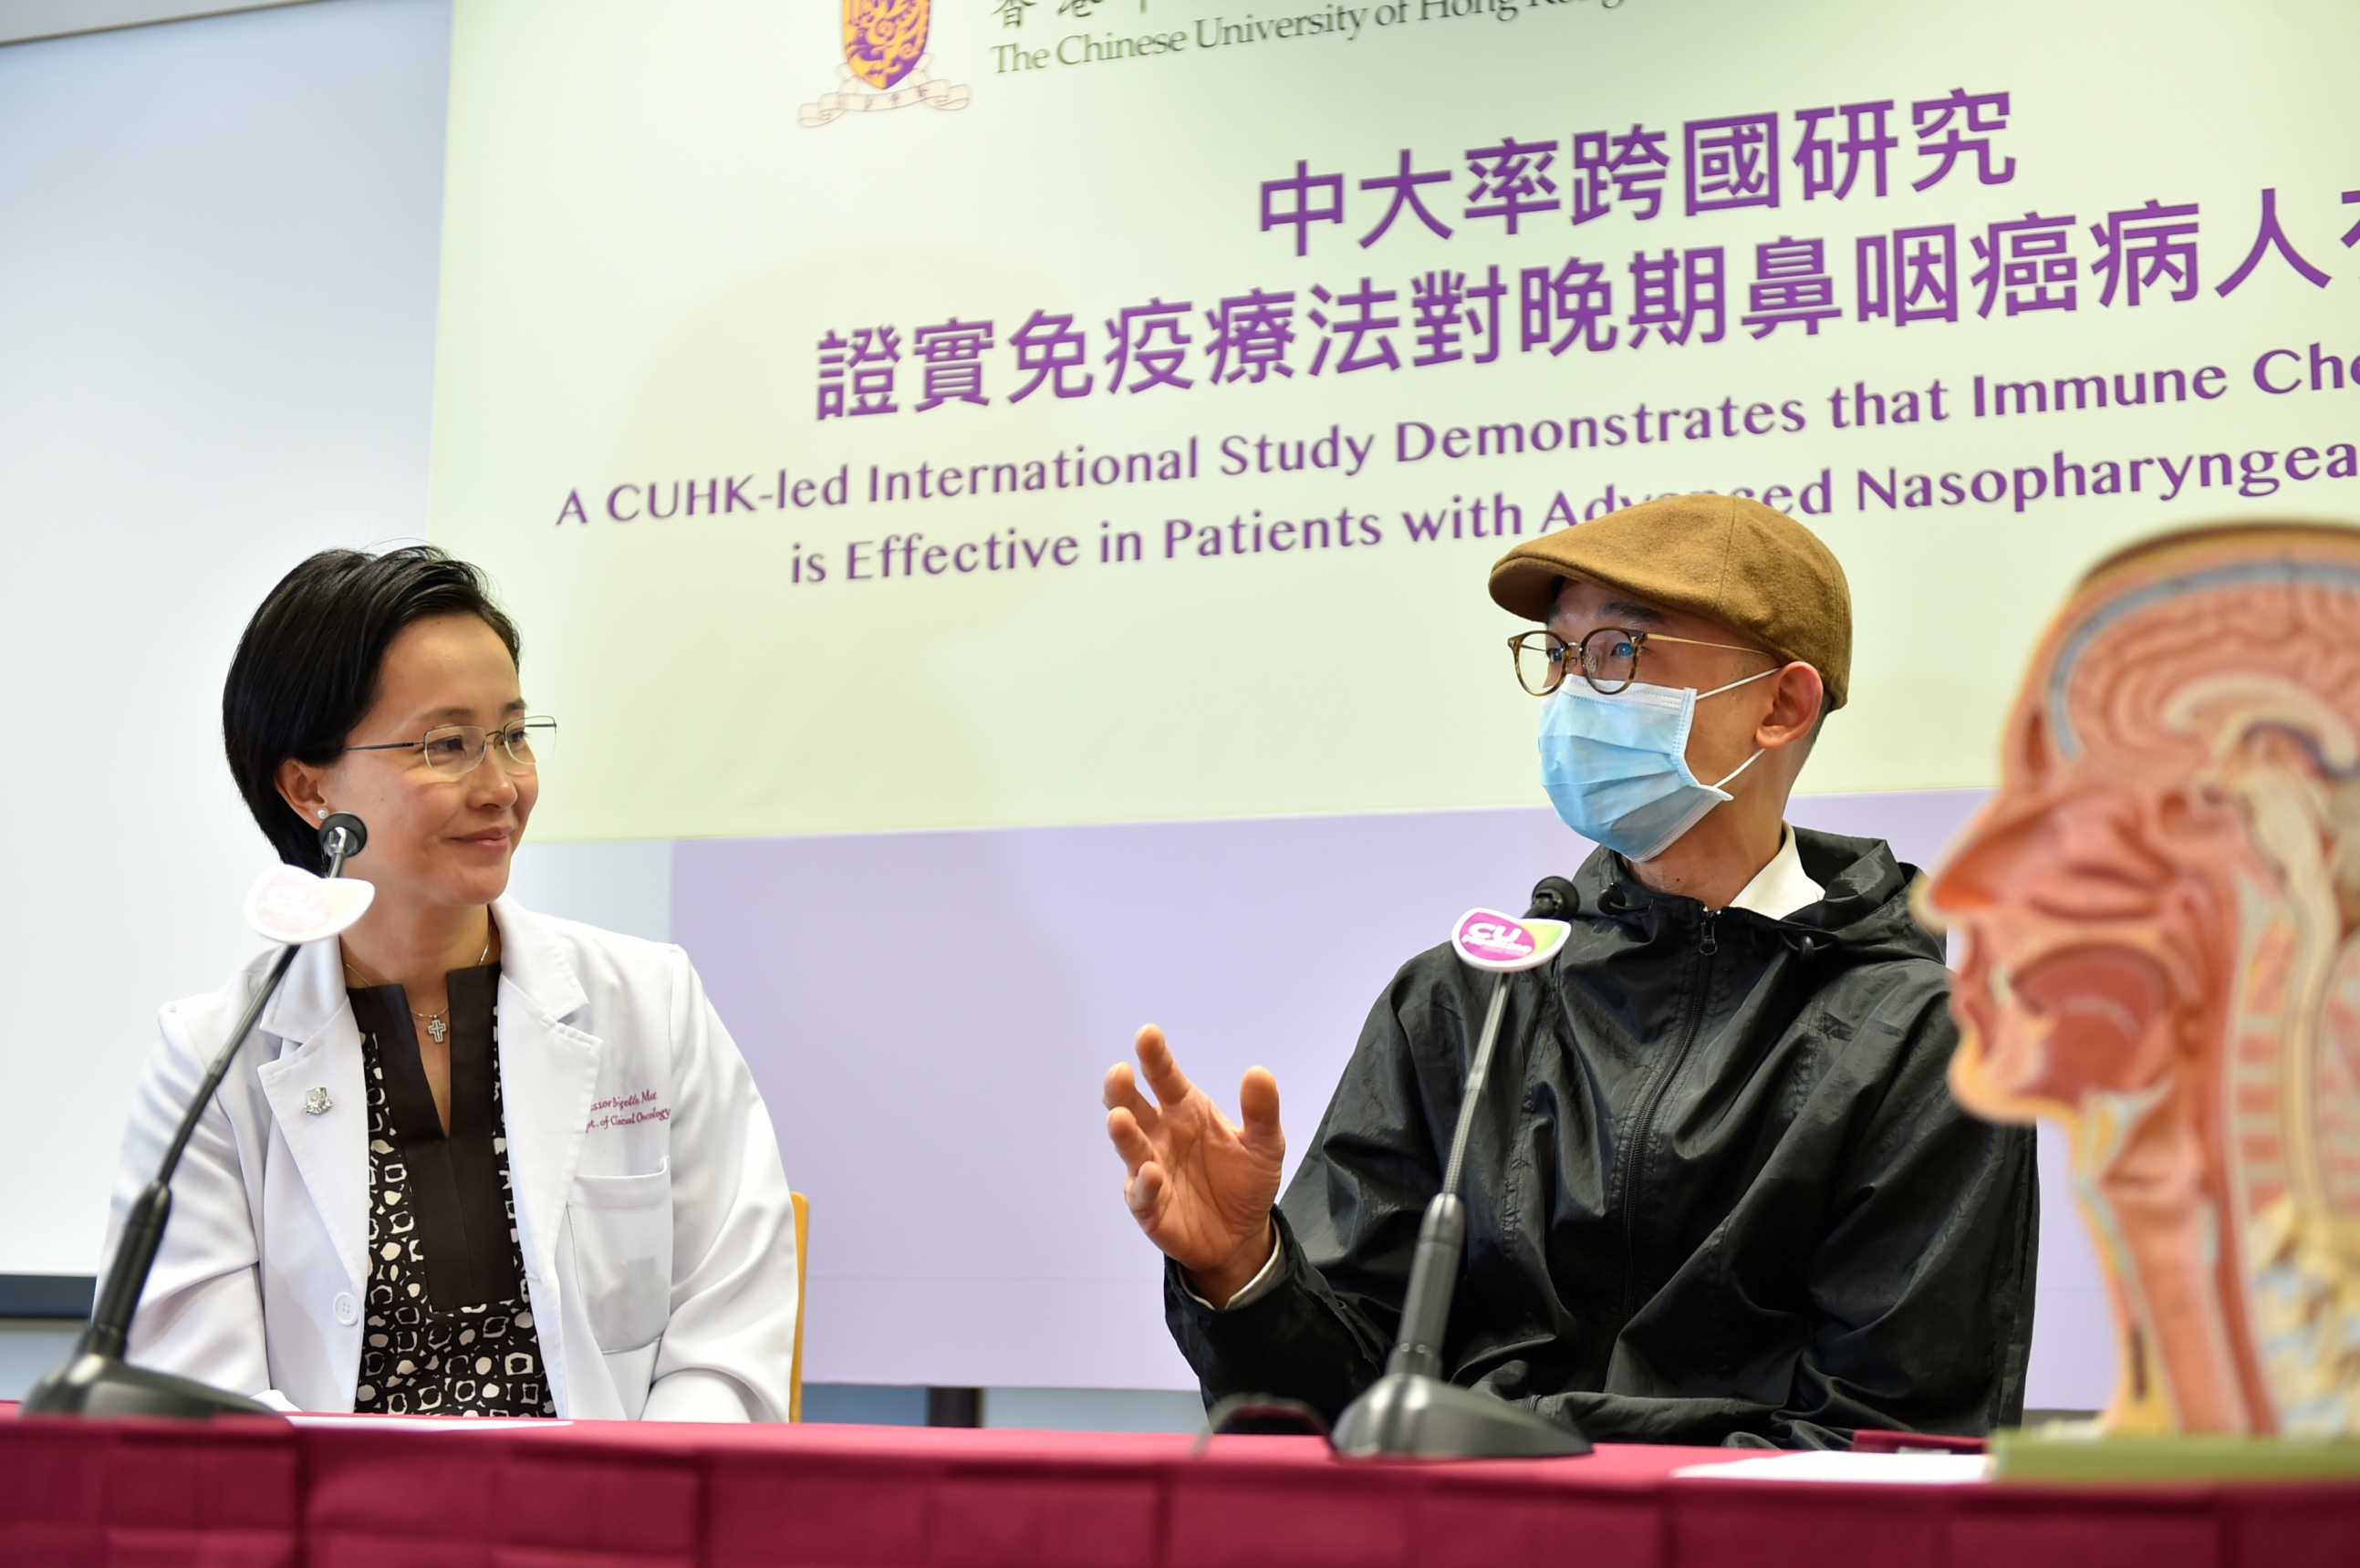 鼻咽癌病人陳先生（化名,右）表示，接受免疫治療對其身體及生活影響不大，副作用明顯較化療少。